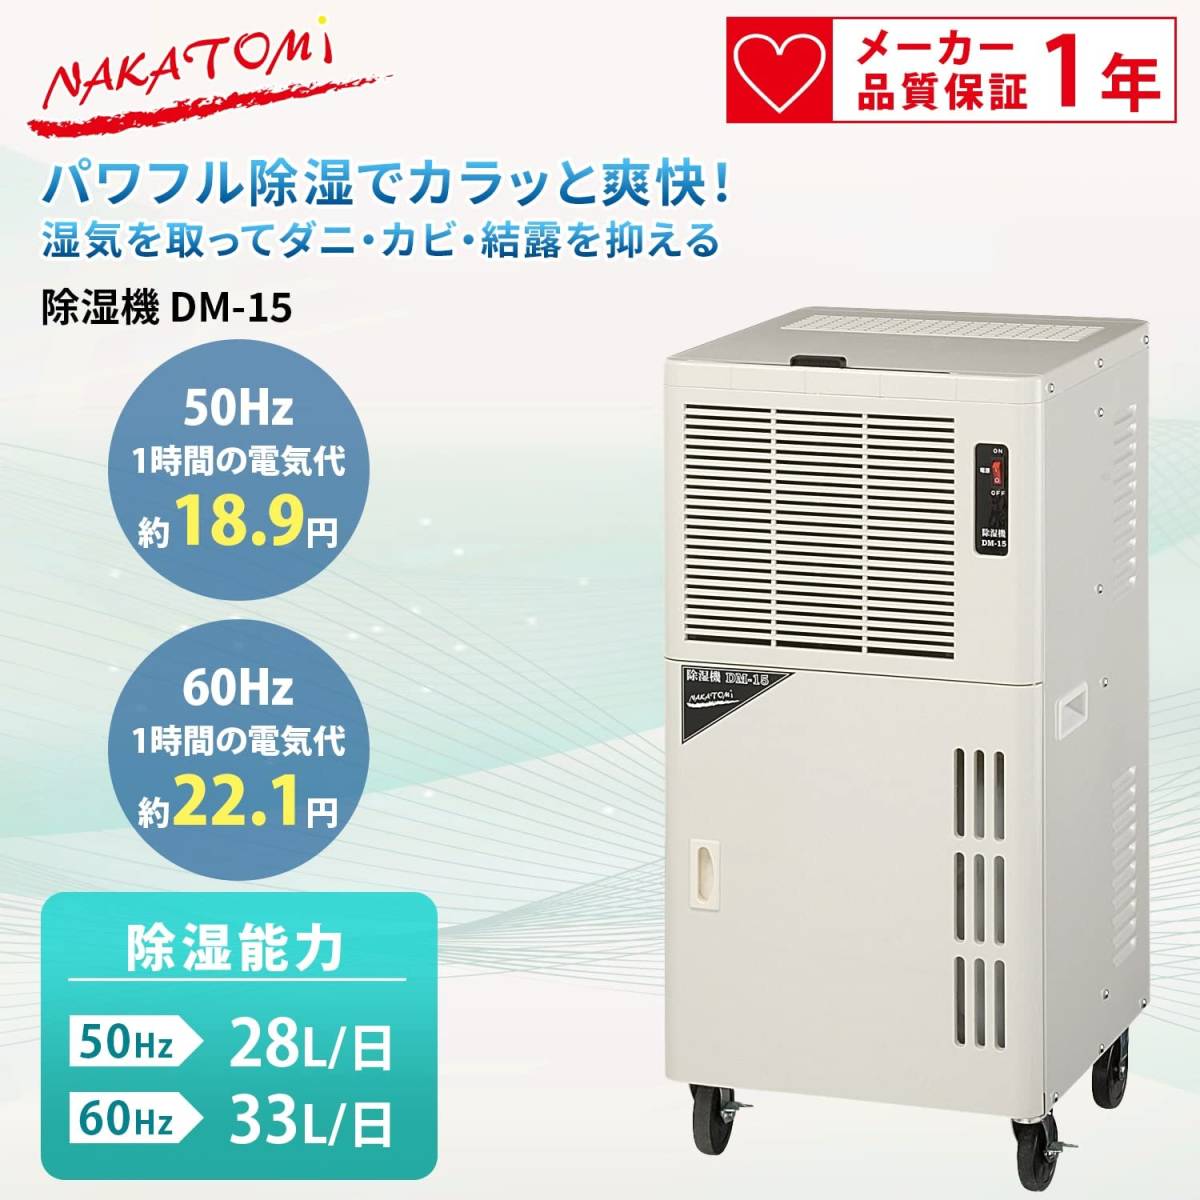 nakatomi(Nakatomi)nakatomi для бизнеса осушитель сушильная машина DM-15